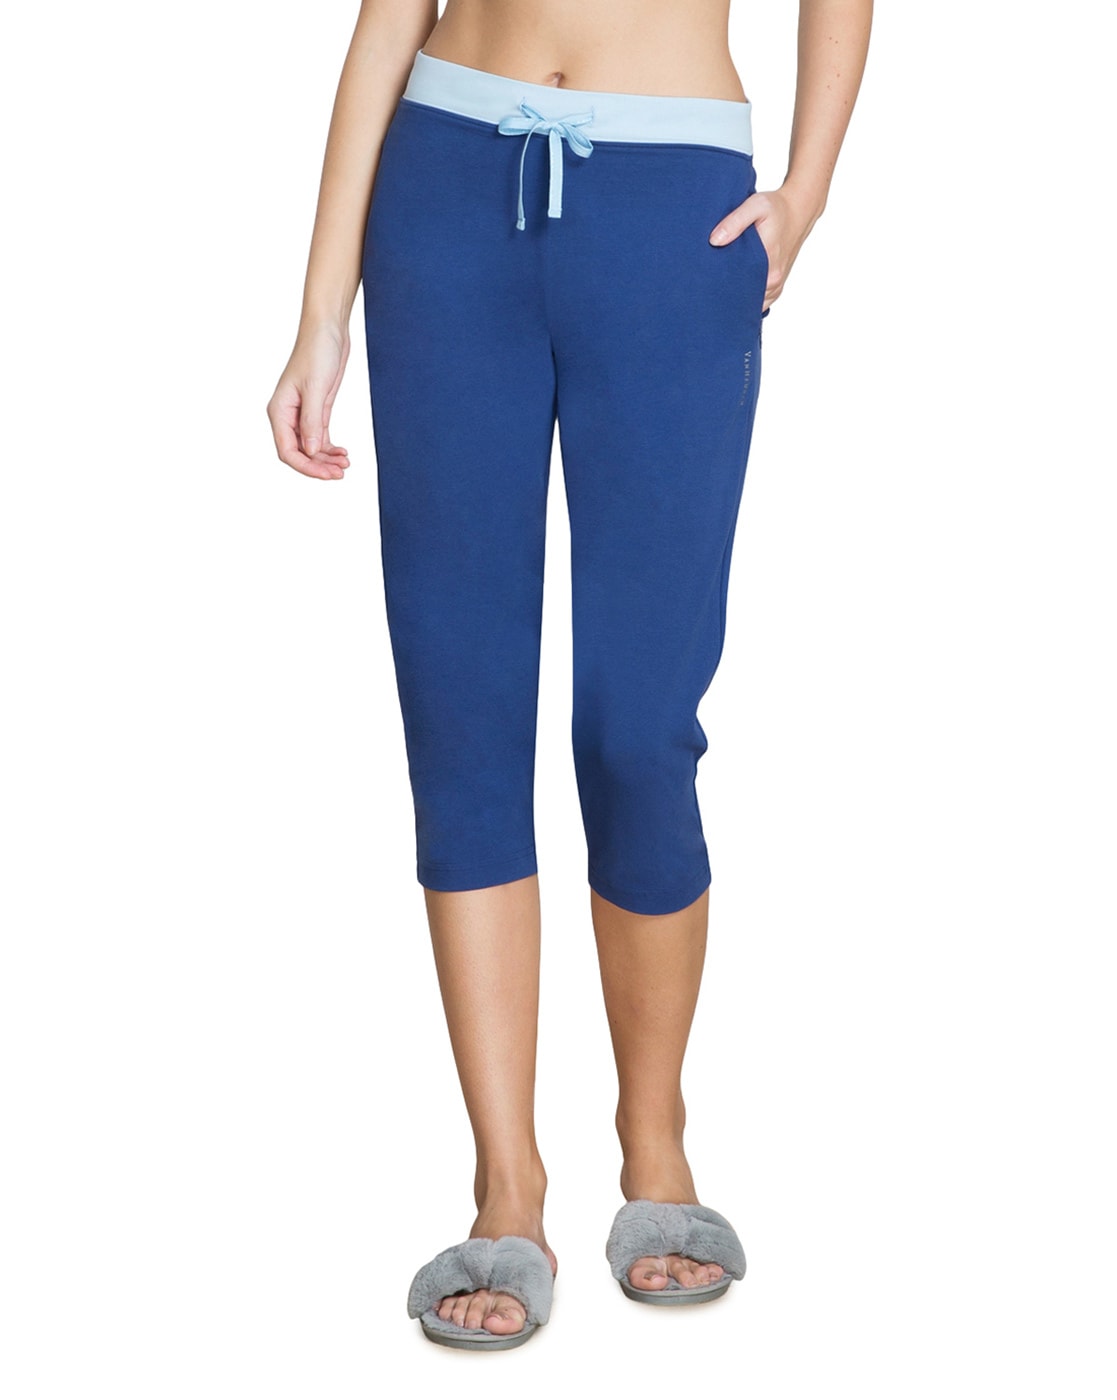 Buy Twilight Blue Pyjamas & Shorts for Women by VAN HEUSEN Online